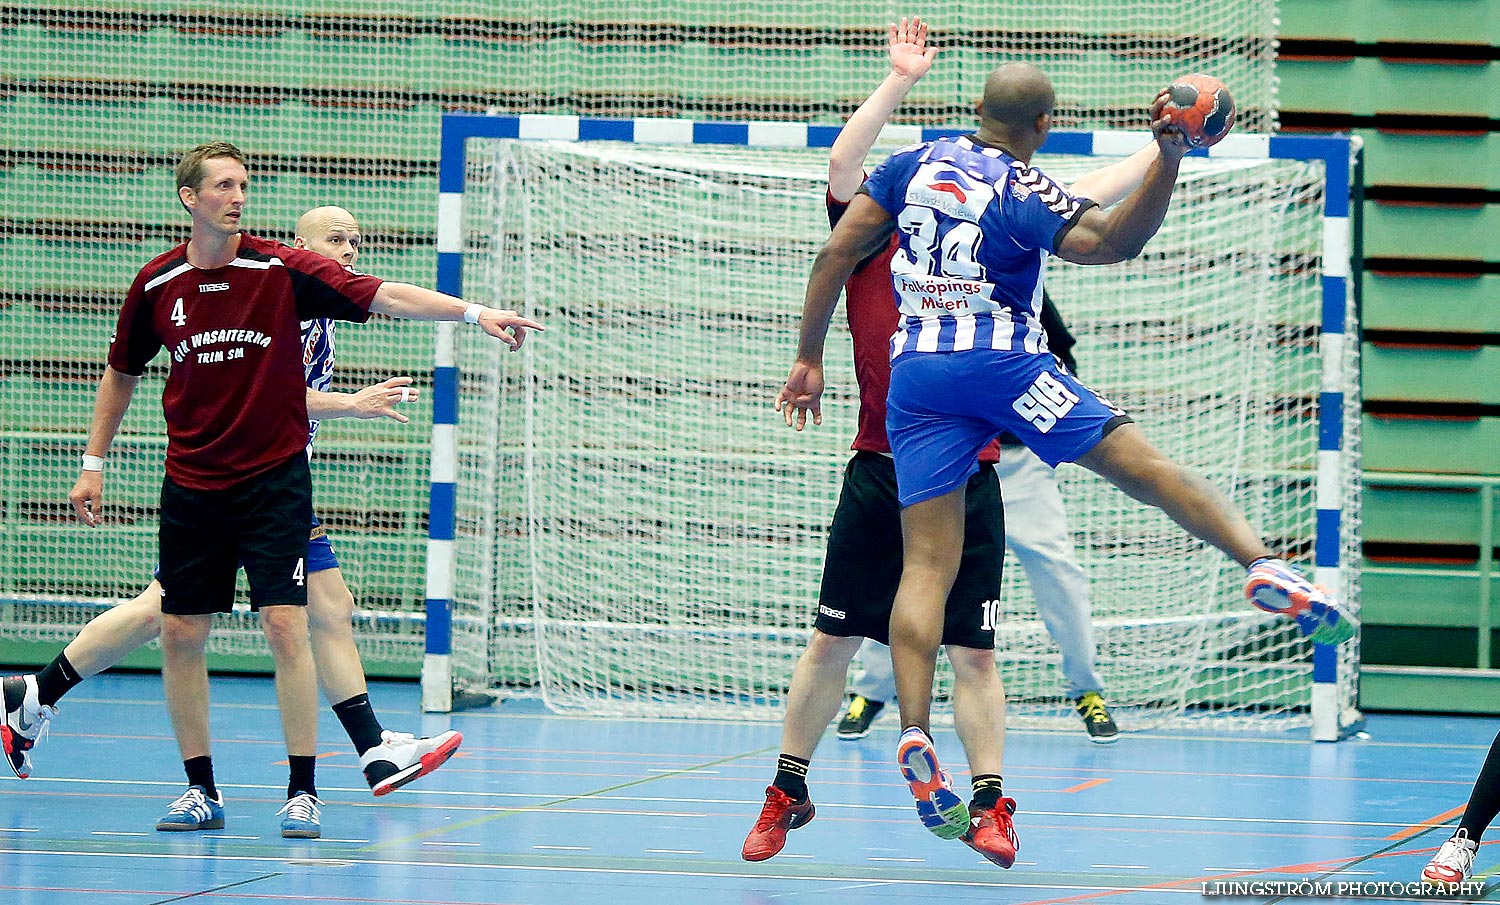 Trim-SM Herrar IFK Skövde HK-GIK Wasaiterna,herr,Arena Skövde,Skövde,Sverige,Handboll,,2014,87383